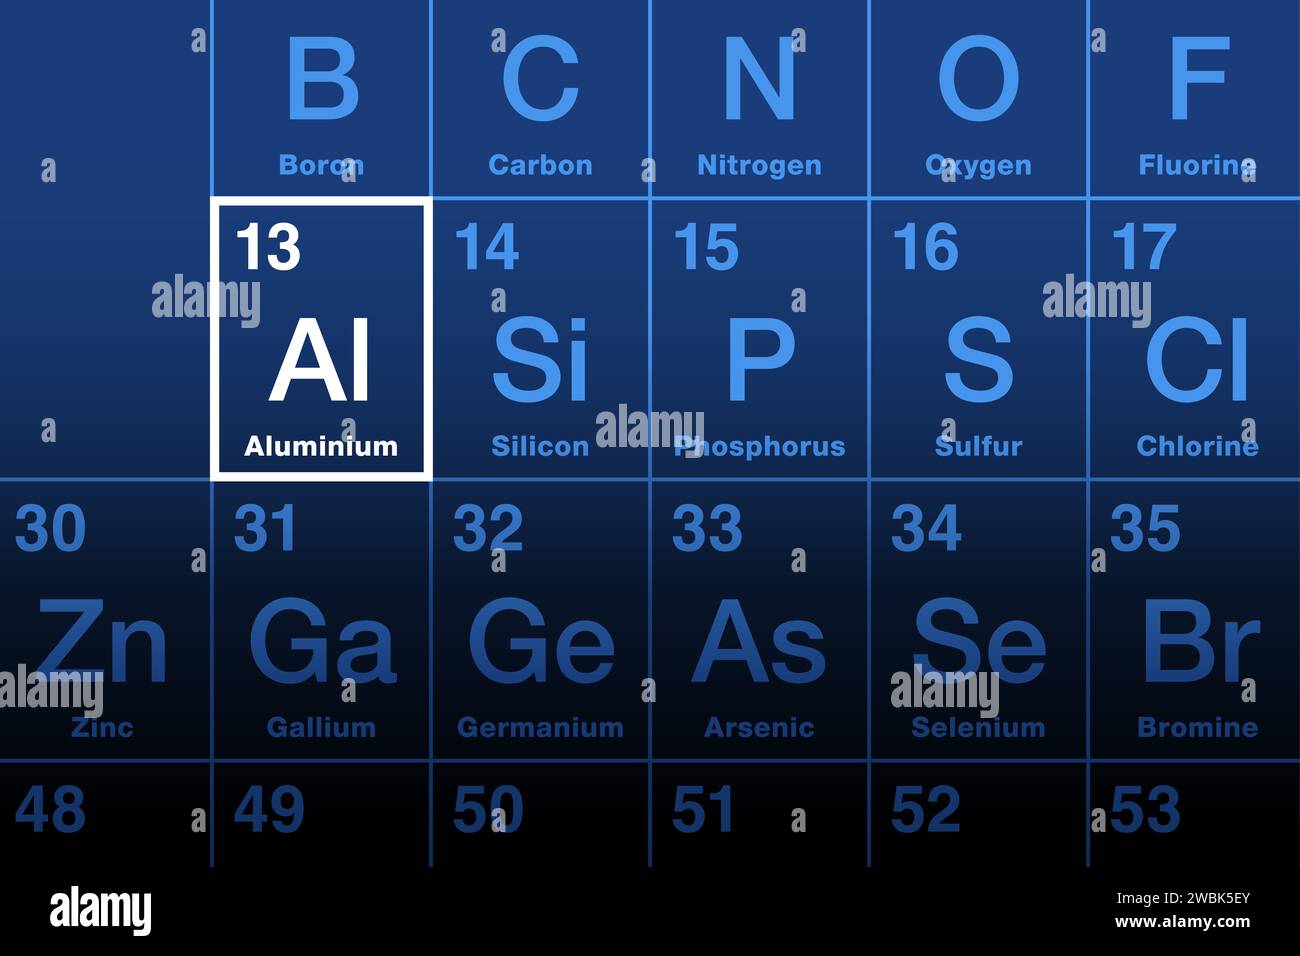 Elément en aluminium sur le tableau périodique. Élément chimique et métal dont le symbole est Al et le numéro atomique 13. Banque D'Images